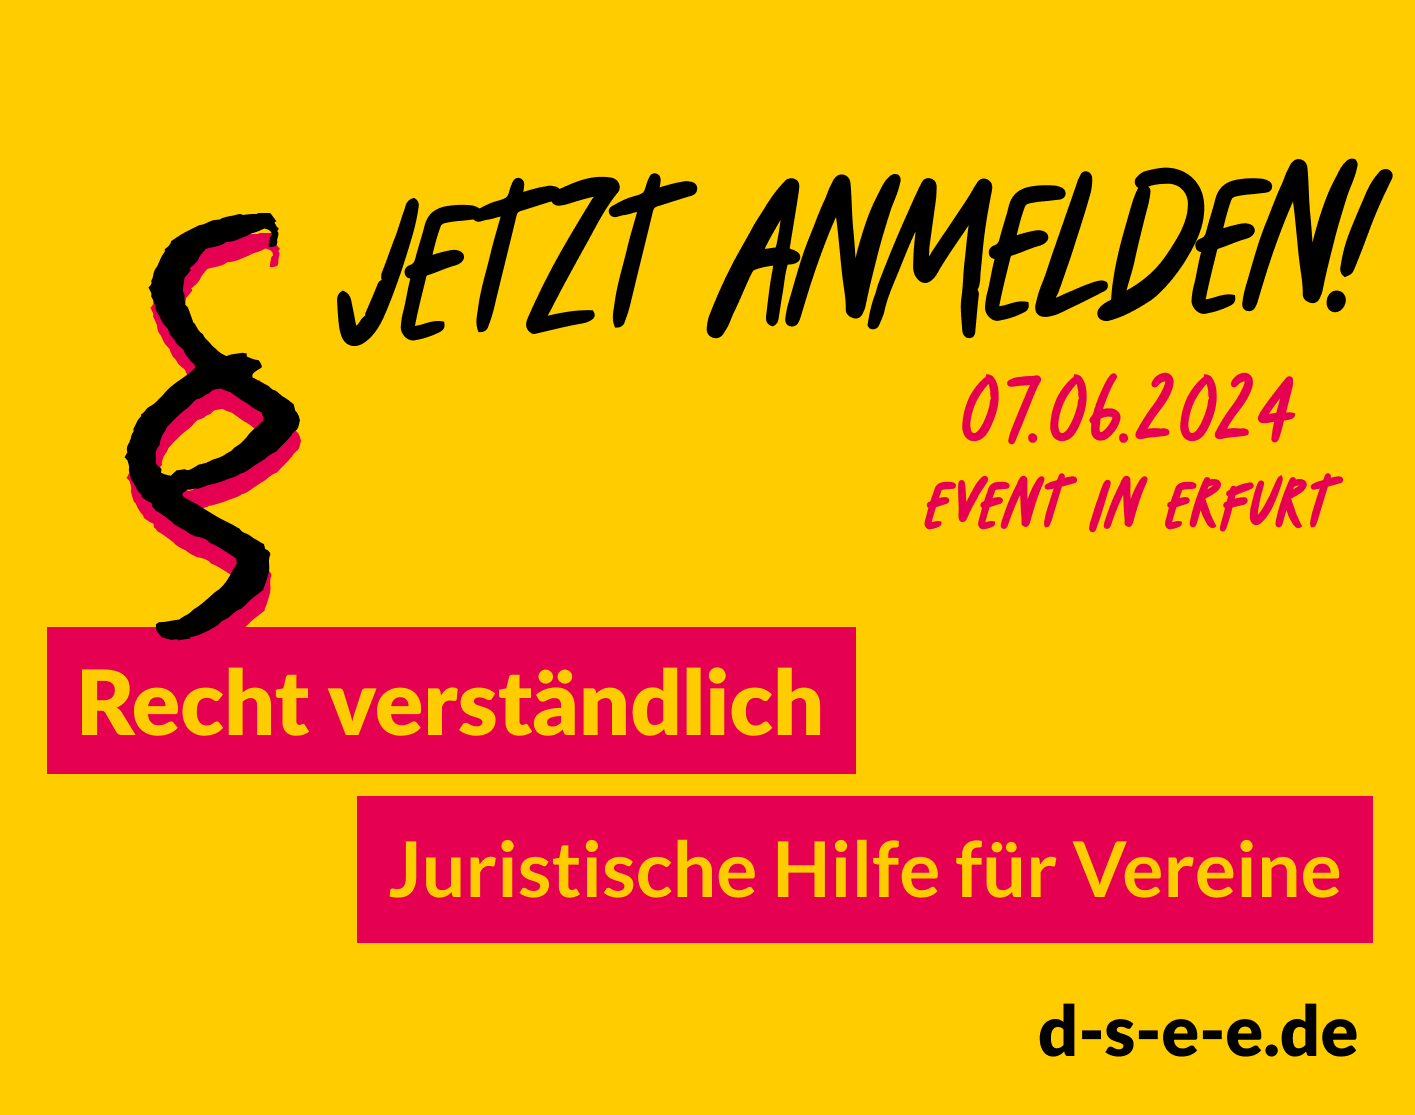 Gelbe grafik mit einem Paragraf-Zeichen. Text: Jetzt anmelden! 07.06.2024. Event in Erfurt. Recht verständlich. Juristische Hilfe für Vereine. d-s-e-e.de